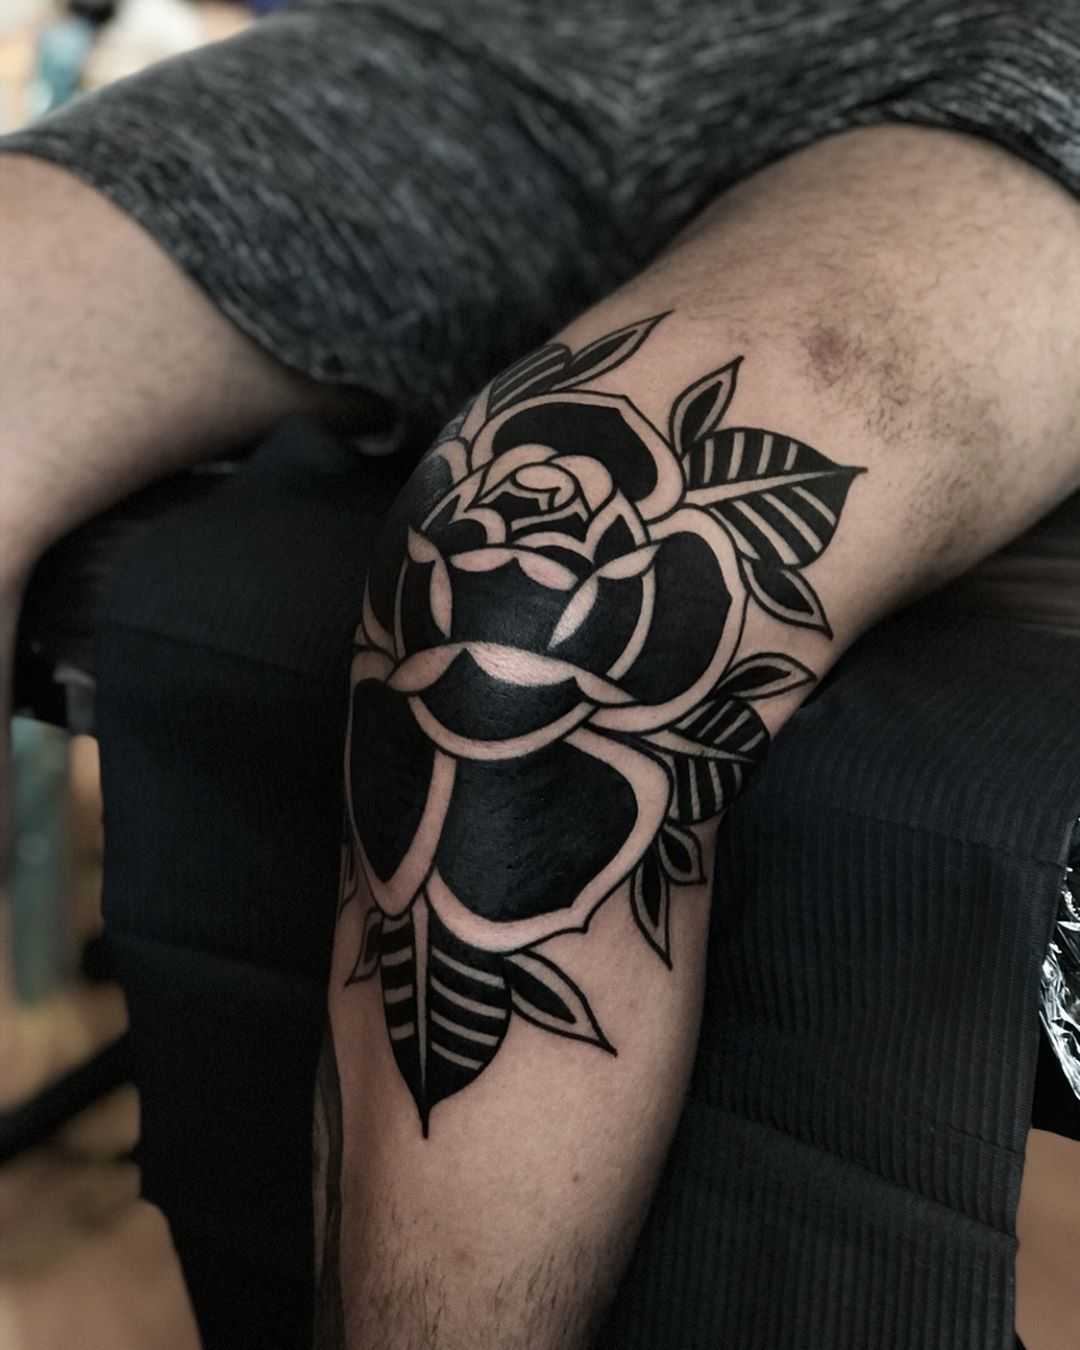 Black rose on a knee by tattooist Alejo GMZ